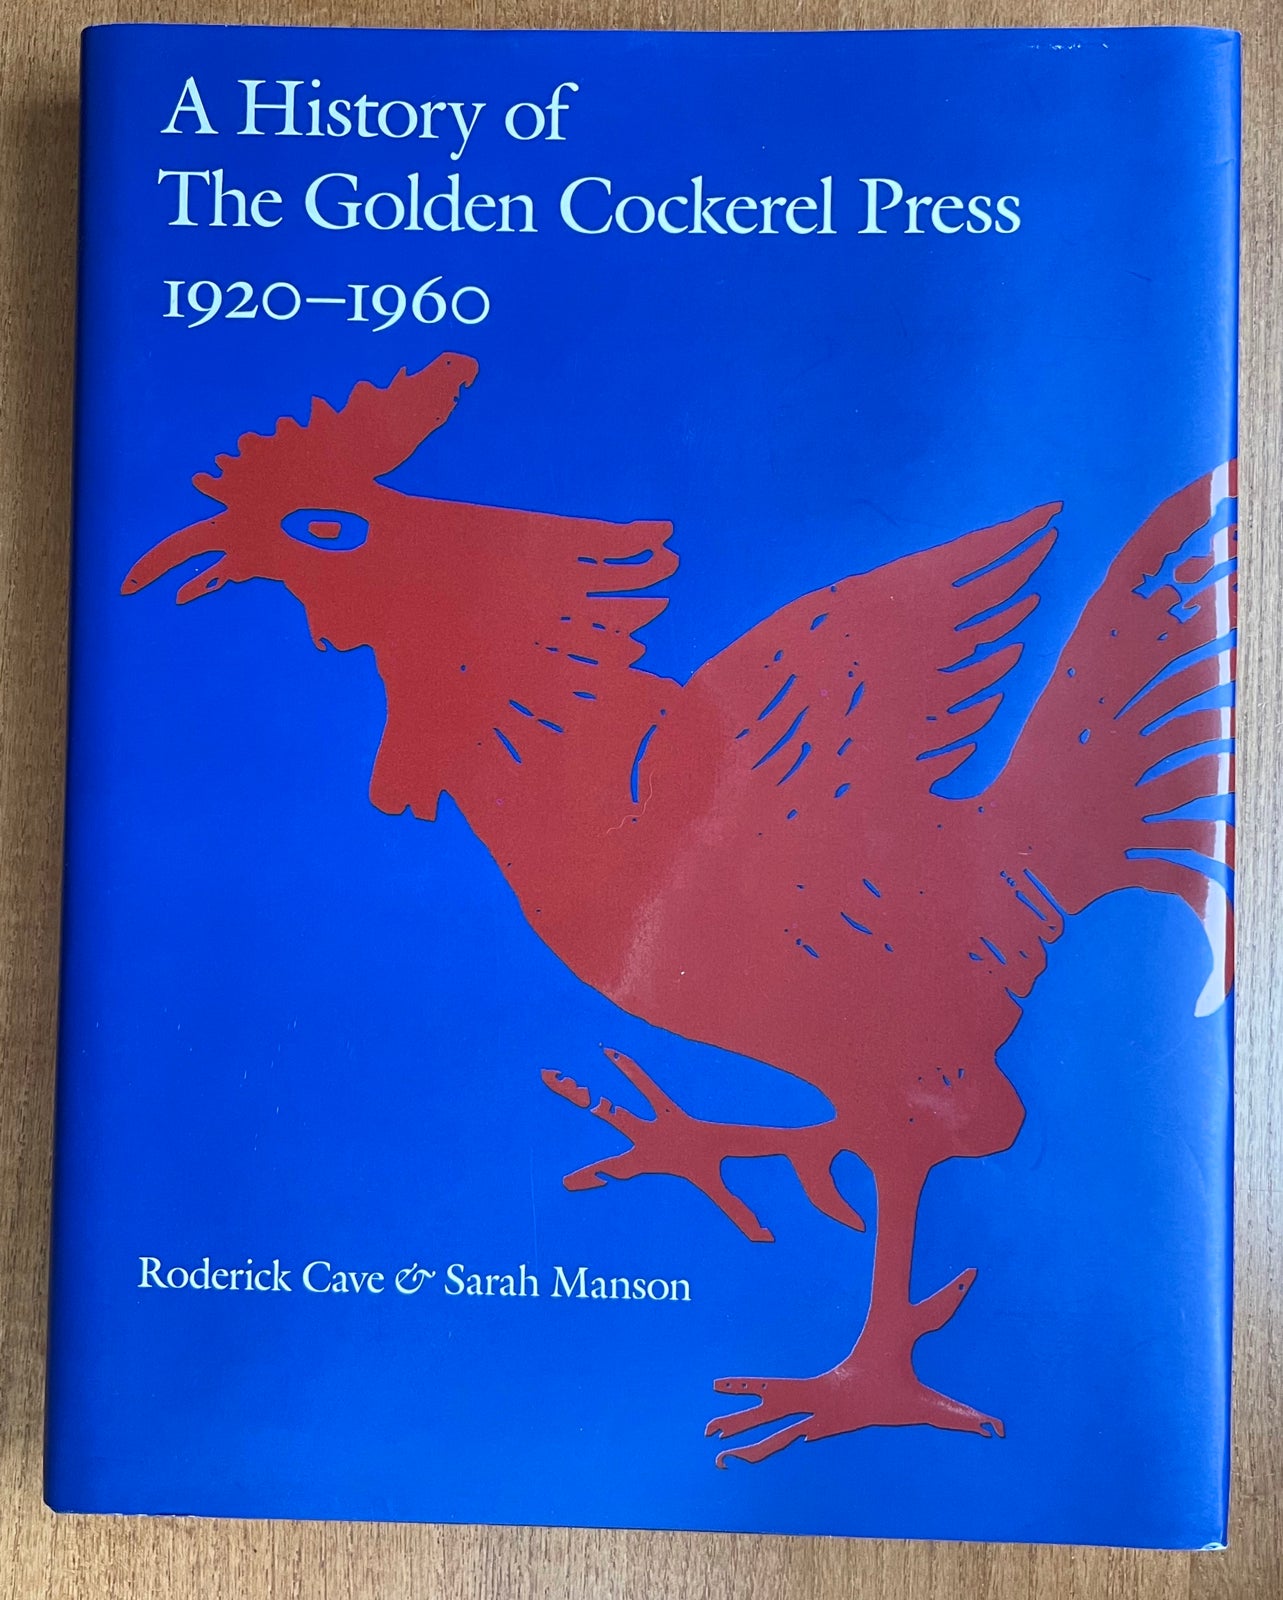 A HISTORY OF THE GOLDEN COCKEREL PRESS 1920-1960.